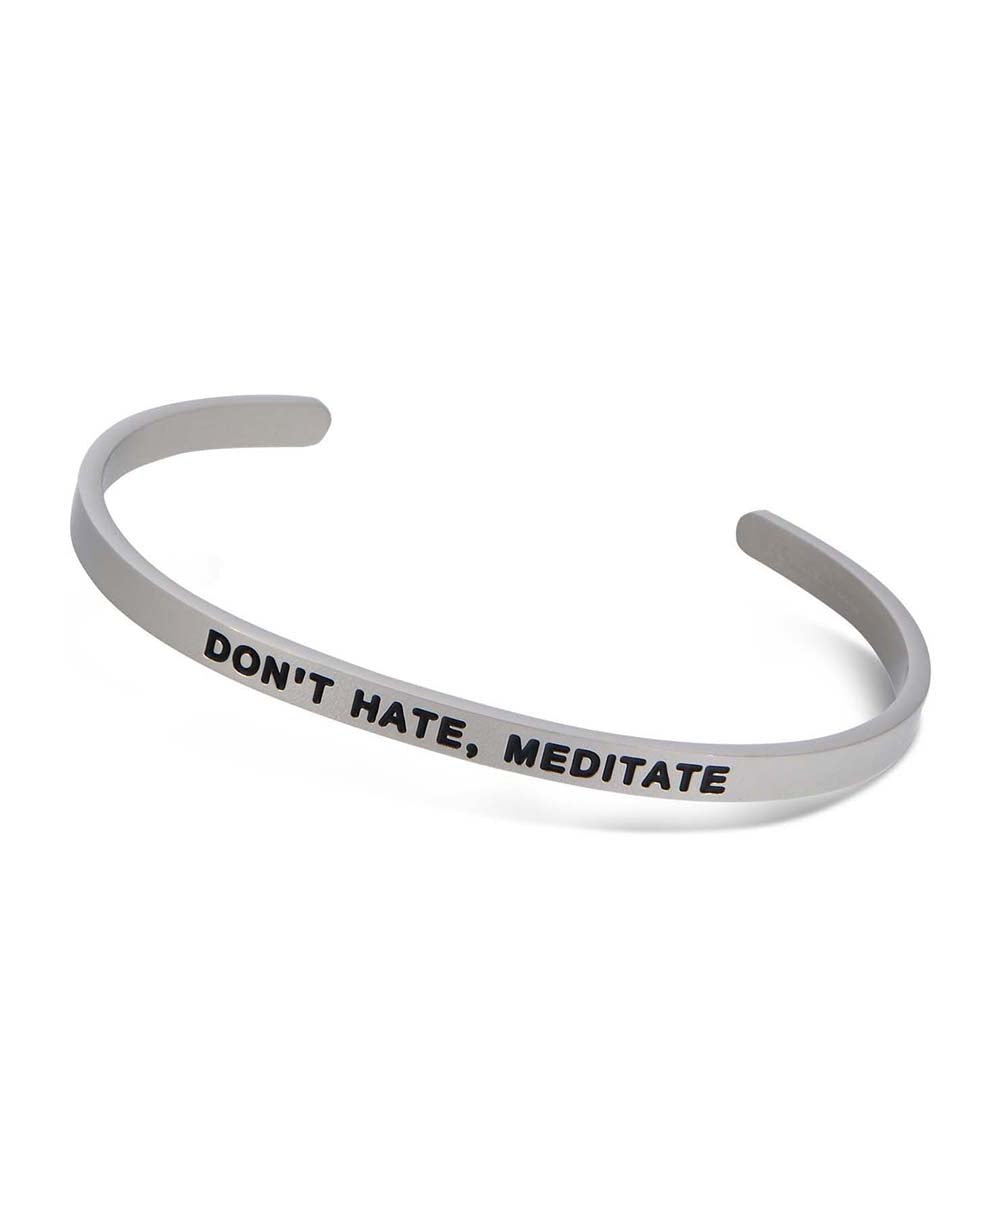 Don’t Hate, Meditate Motivational Cuff Bracelet - Bracelets